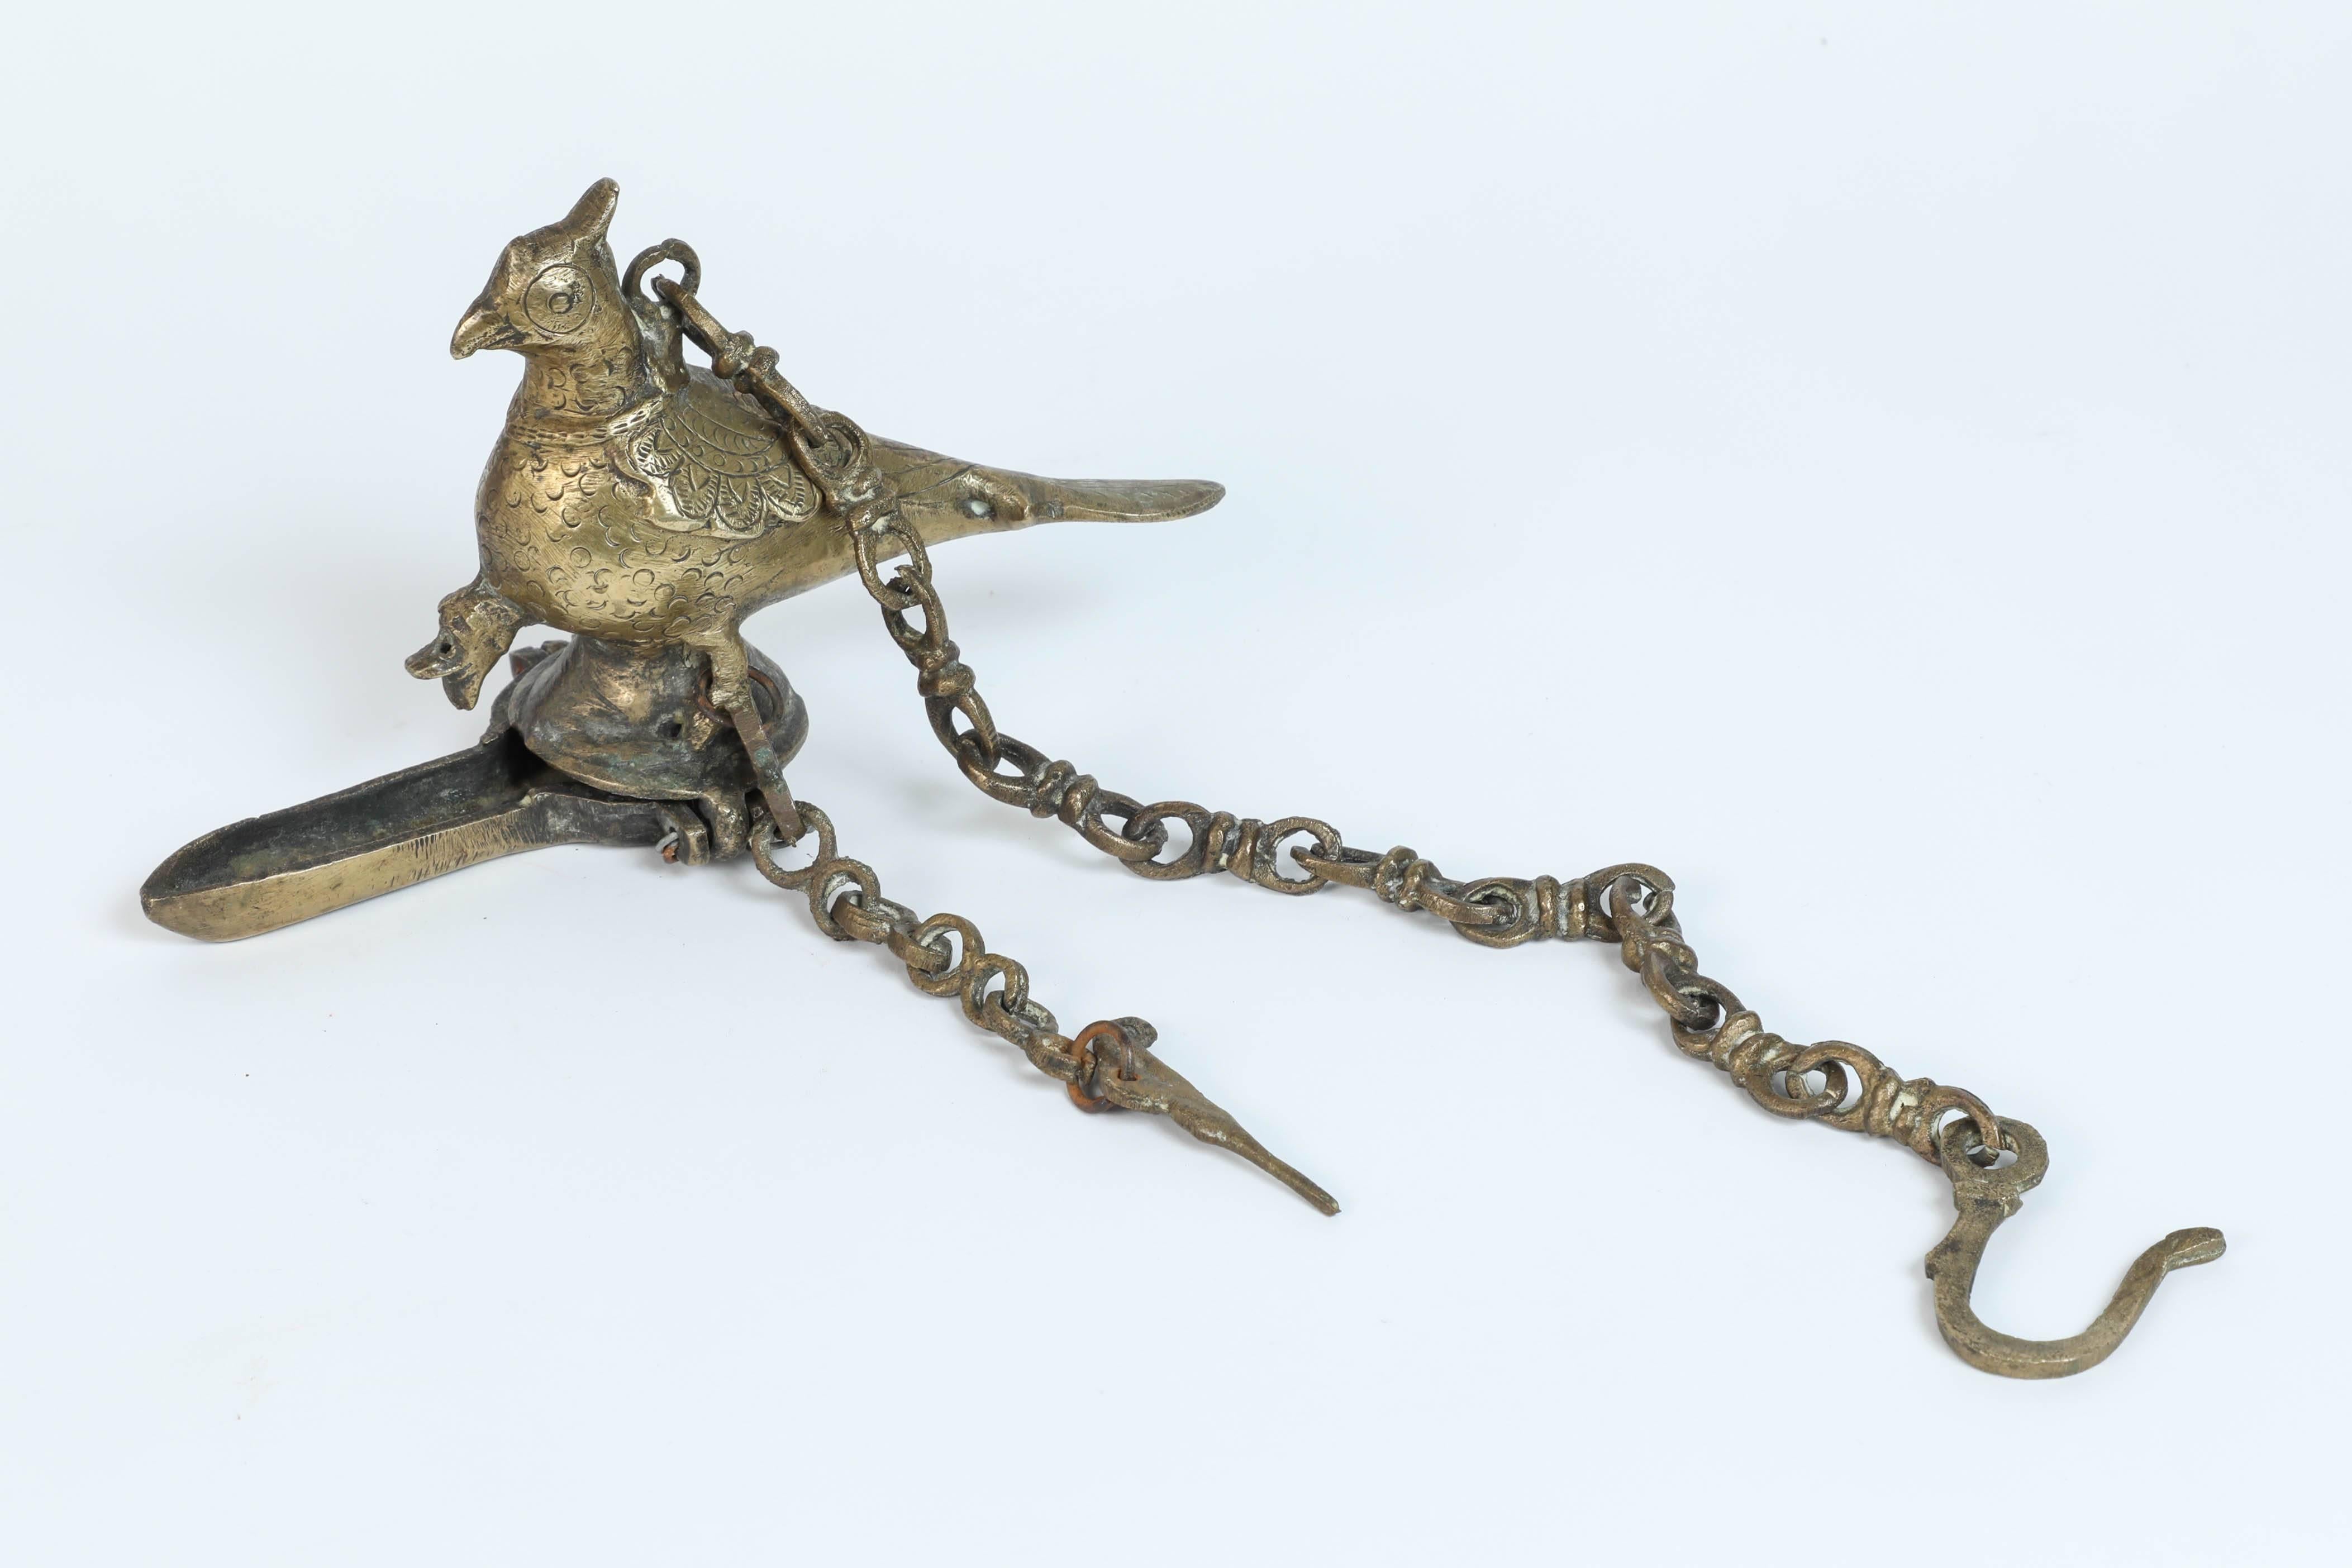 Ancienne lampe à huile suspendue en bronze coulé en forme de paon, un bel oiseau mythique, avec une chaîne de suspension.
Le corps de l'oiseau sert de réservoir pour l'huile tandis que le bec verseur situé en bas est l'emplacement de la mèche de la